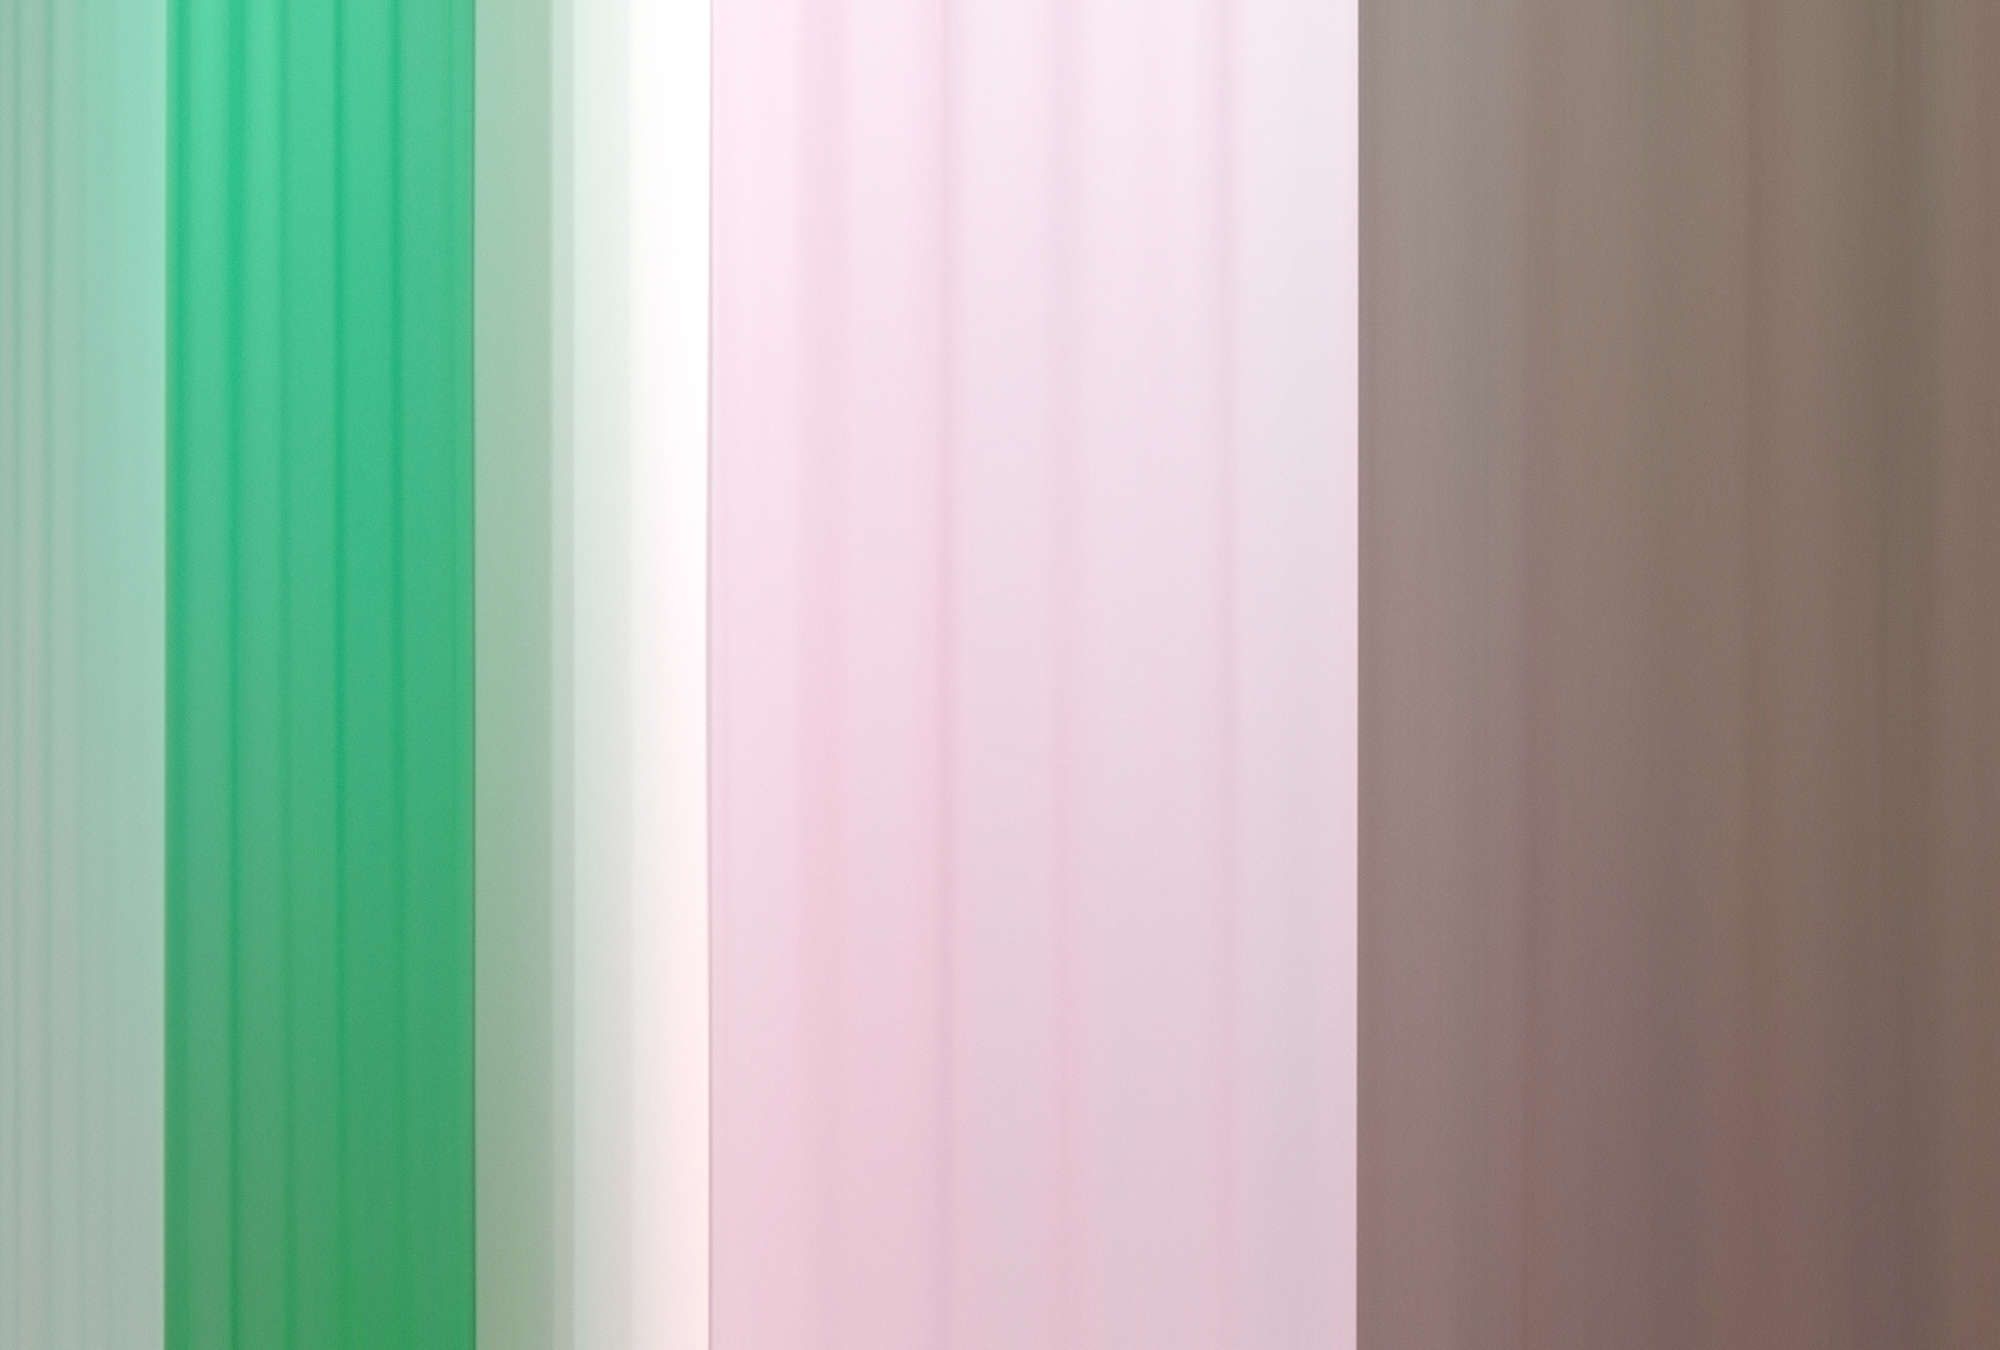             Fotomural »co-colores 1« - Degradado de colores con rayas - Verde Rosa, Marrón | Material no tejido de textura ligera
        